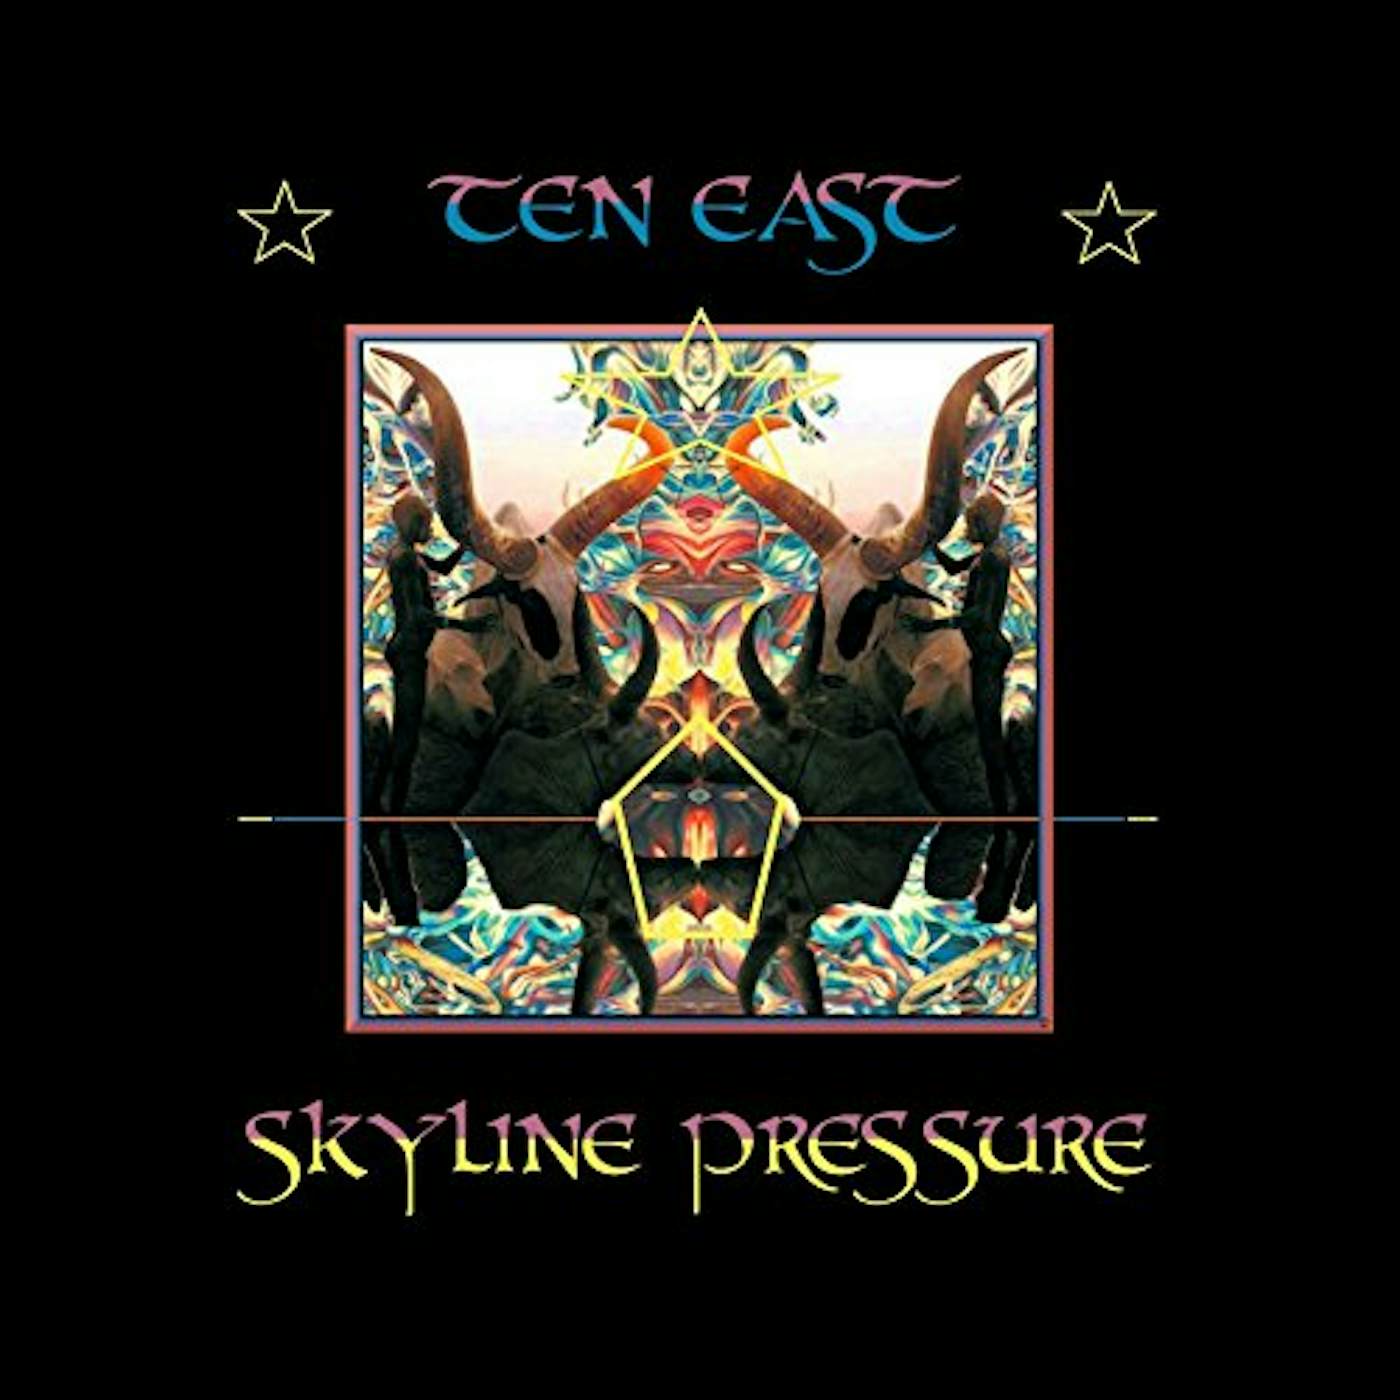 Ten East SKYLINE PRESSURE CD